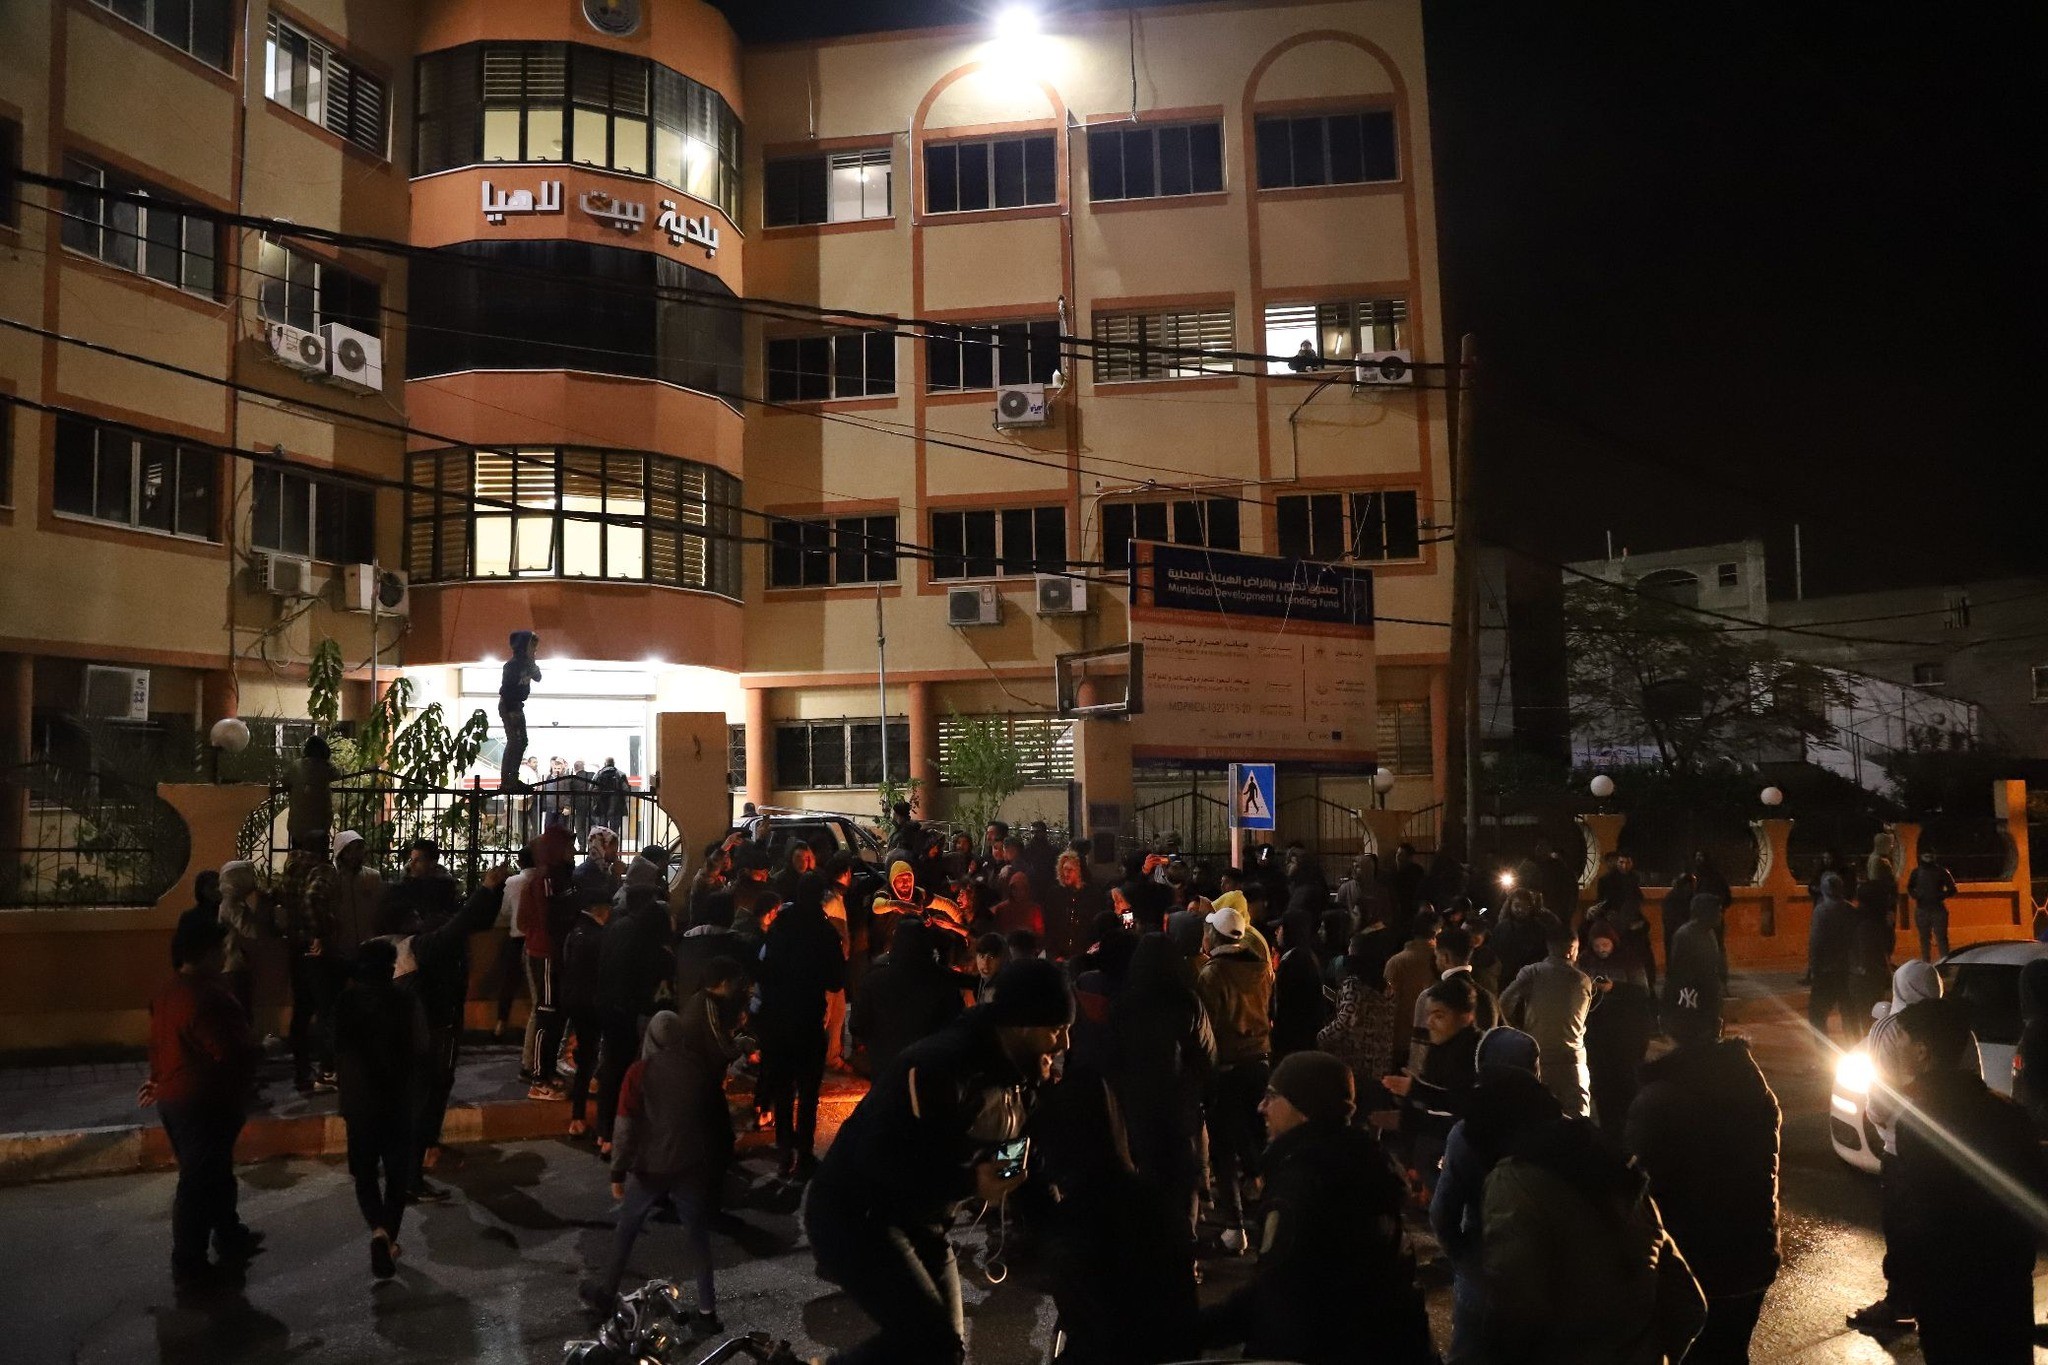 صور من احتجاجات أهالي بيت لاهيا على اقتطاع أراضي من المدينة لصالح بلديات أخرى.. تصوير (موسى سالم) 222.jpg